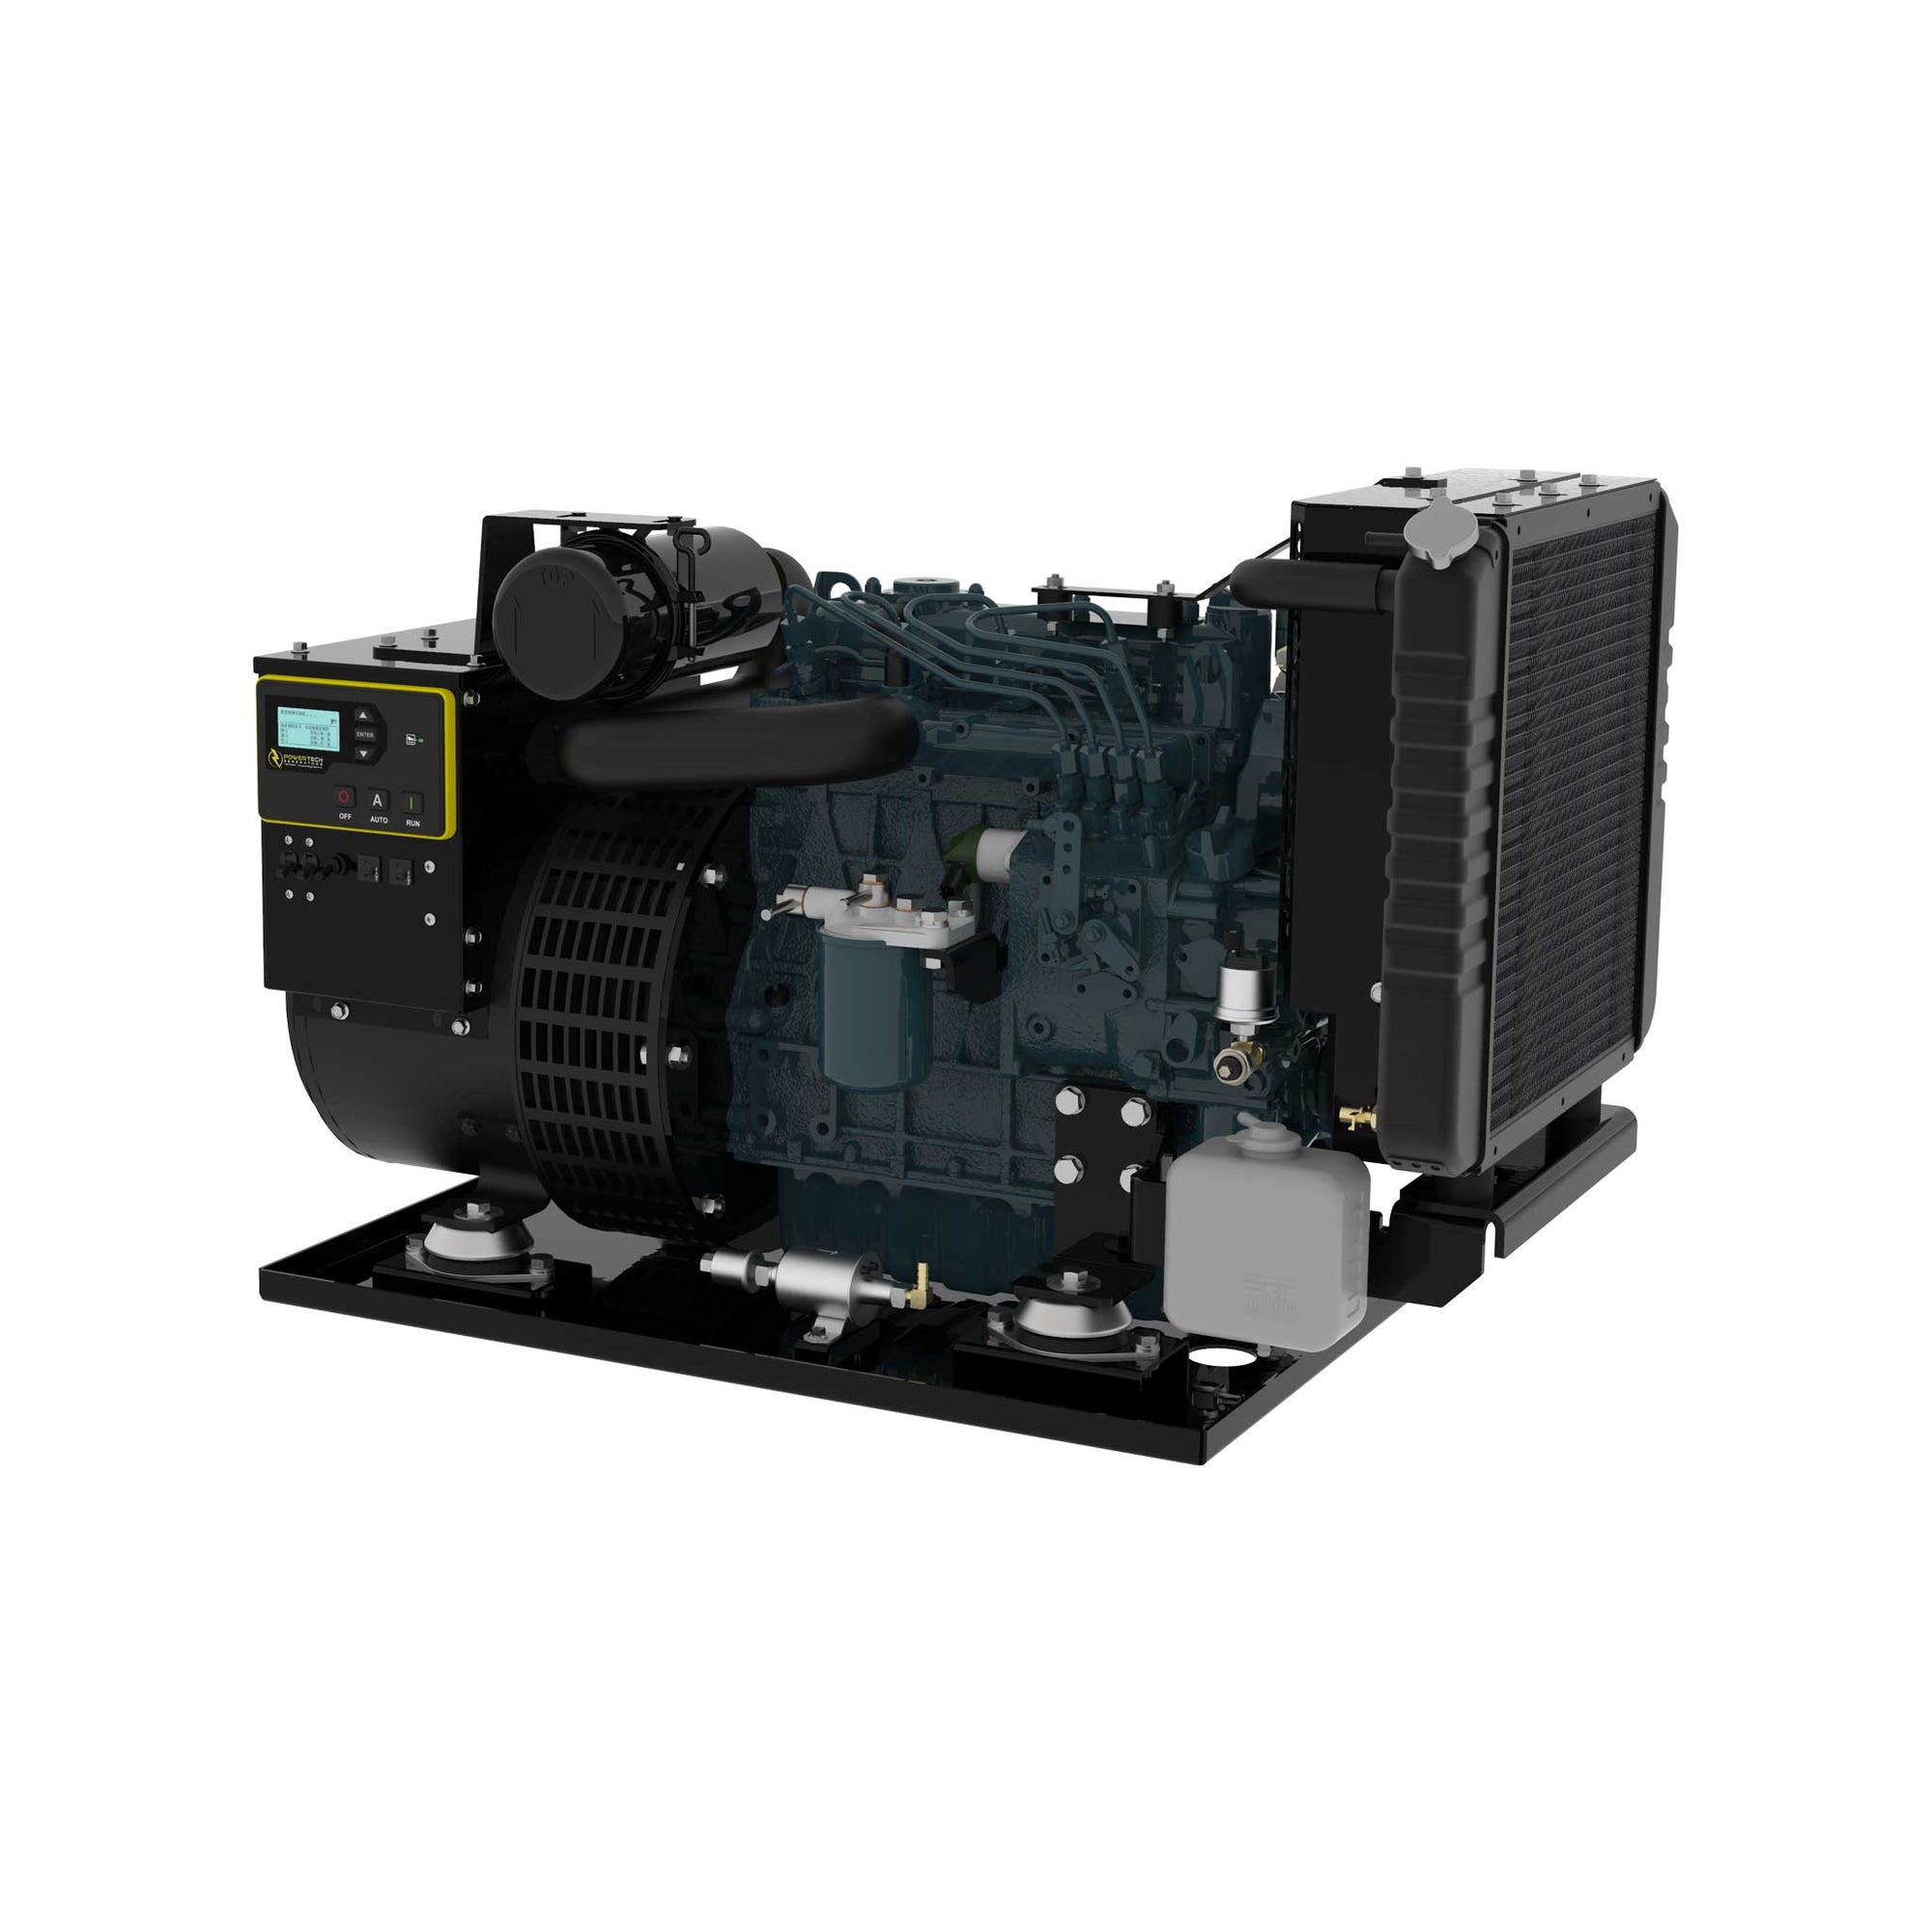 12,000 Watt Diesel Generator with custom options